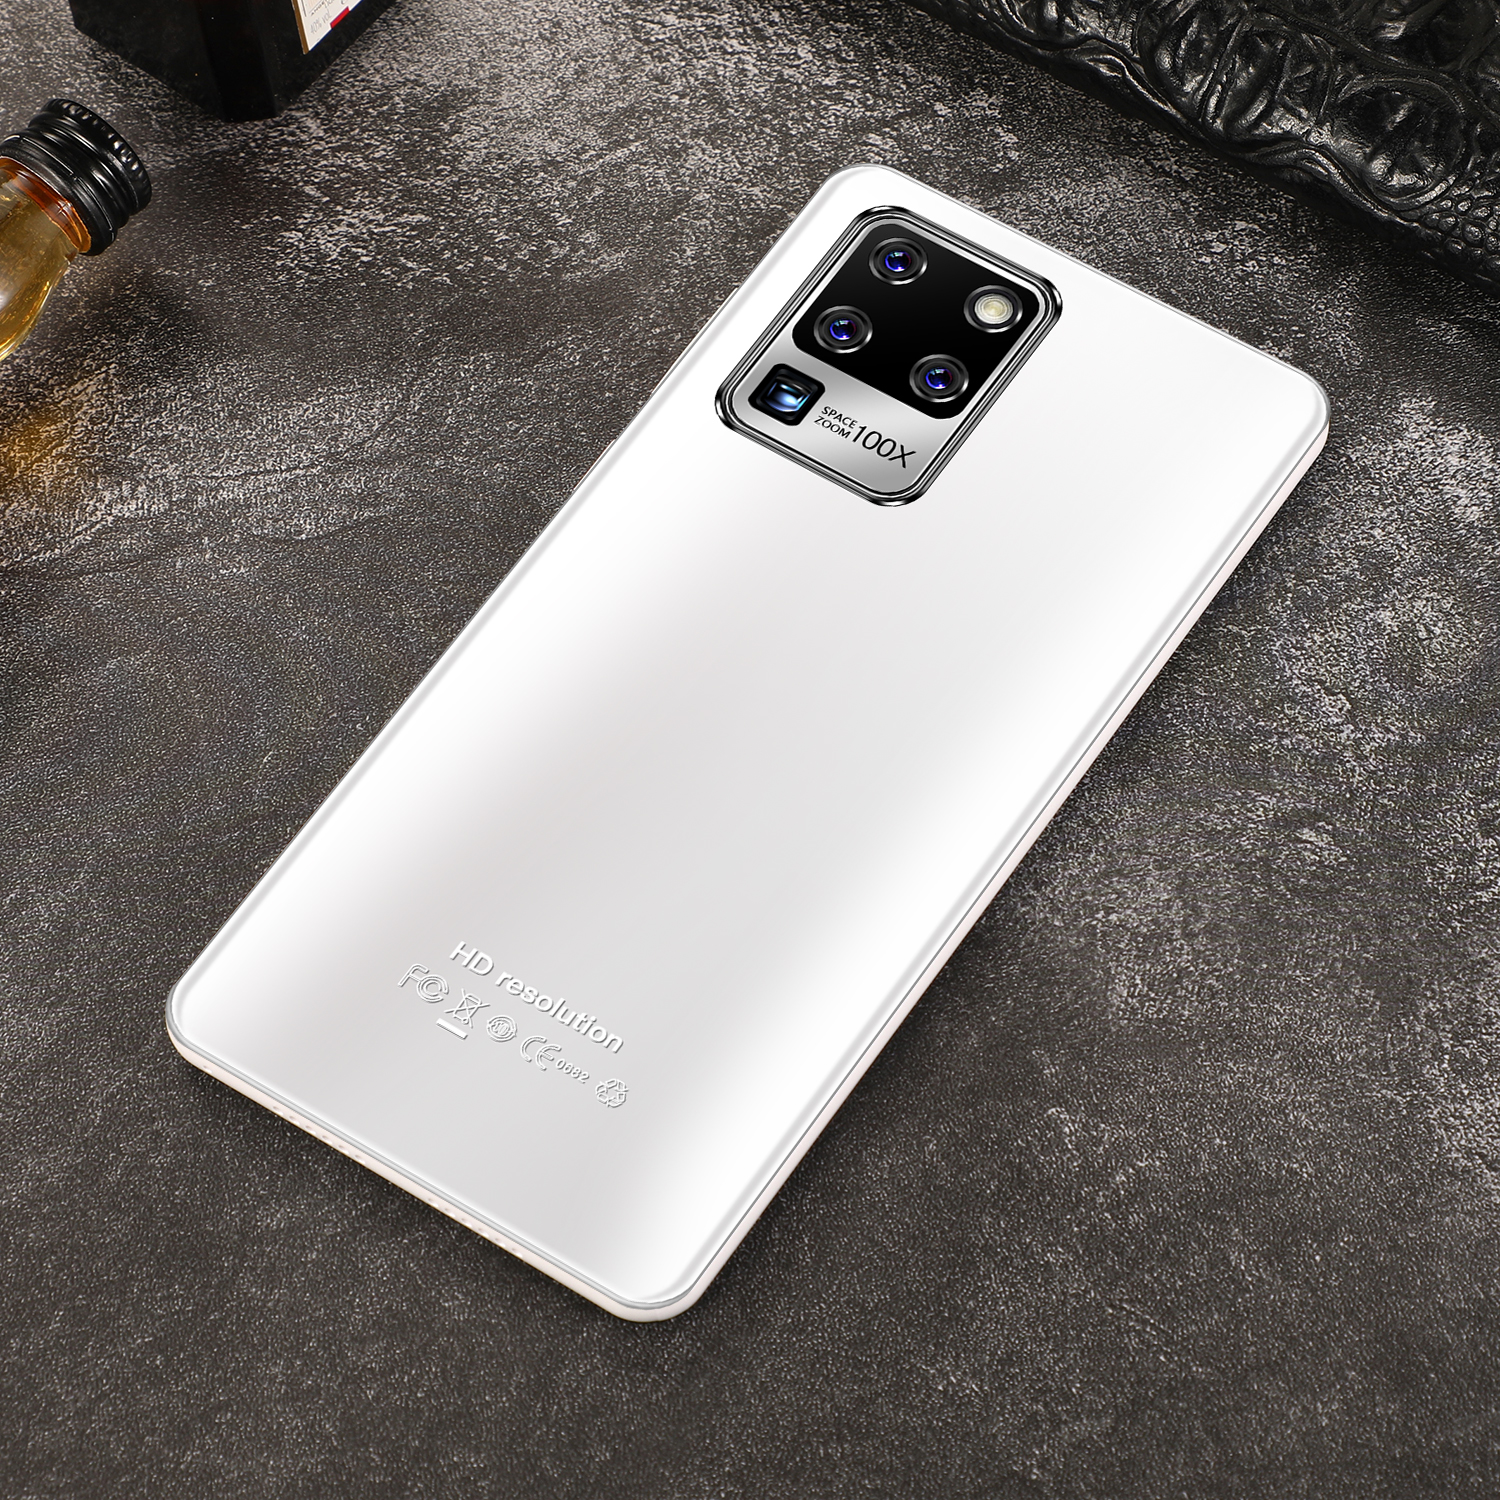 มือถือราคาถูก Sansumg Galaxy S30u + มือถือสมาร์ทโฟนจอใหญ่ 7.5 นิ้ว RAM12G Rom512GB หน่วยความจำใหญ่รองรับ 5G จริง Android 10 สแกนลายนิ้วมือปลดล็อคใบหน้าสเปคจริ